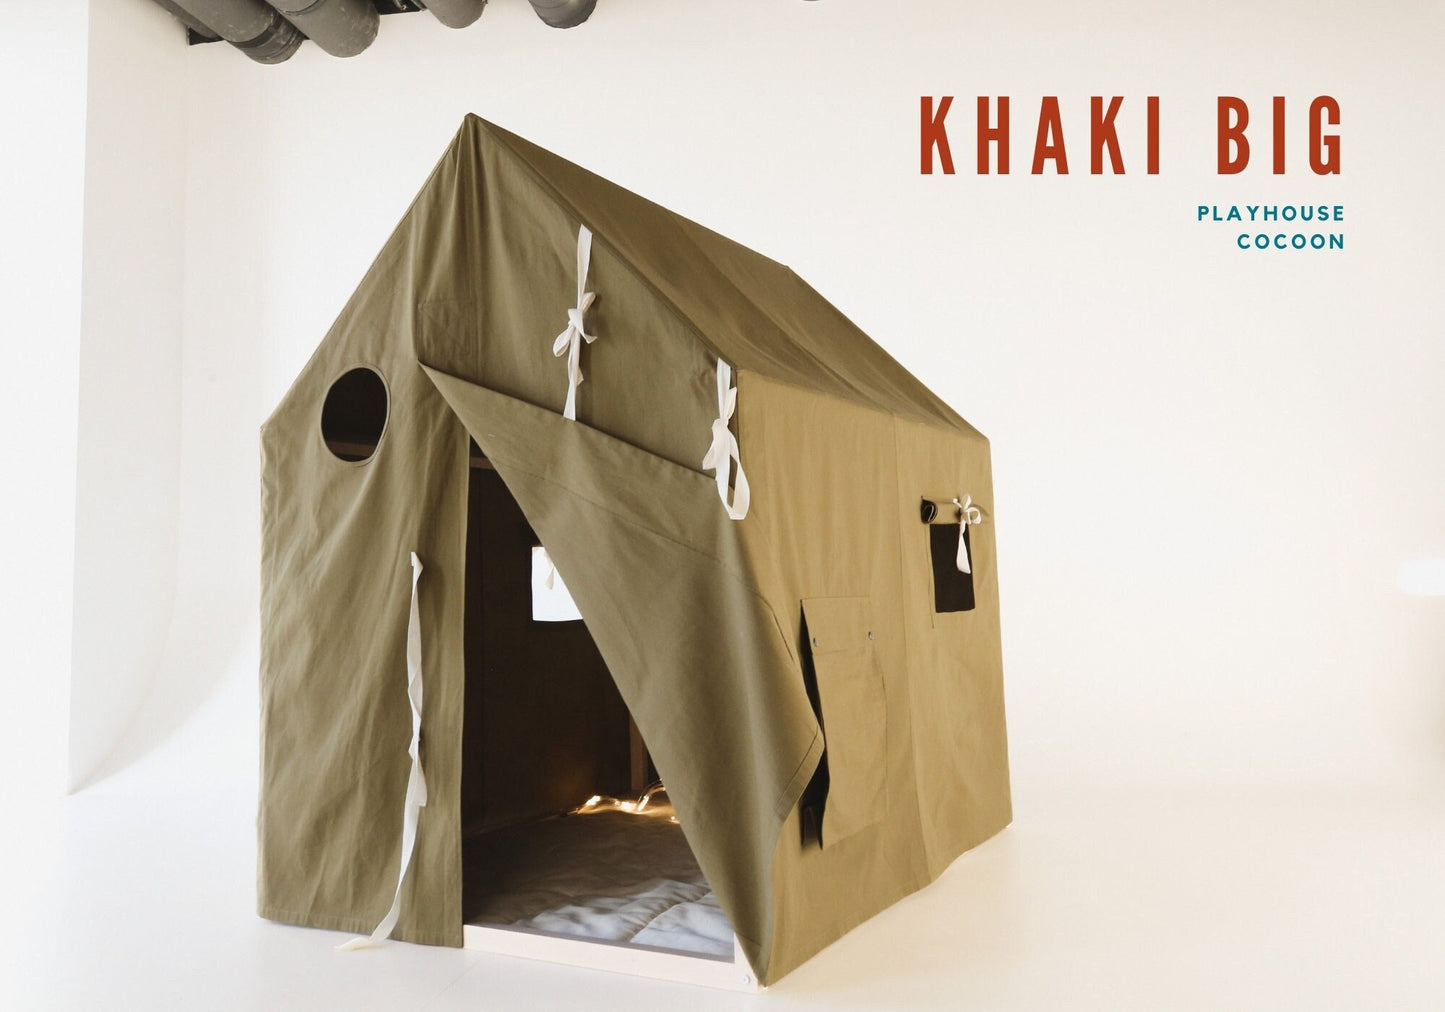 Big Khaki playhouse, playhouse with windows, milk mat